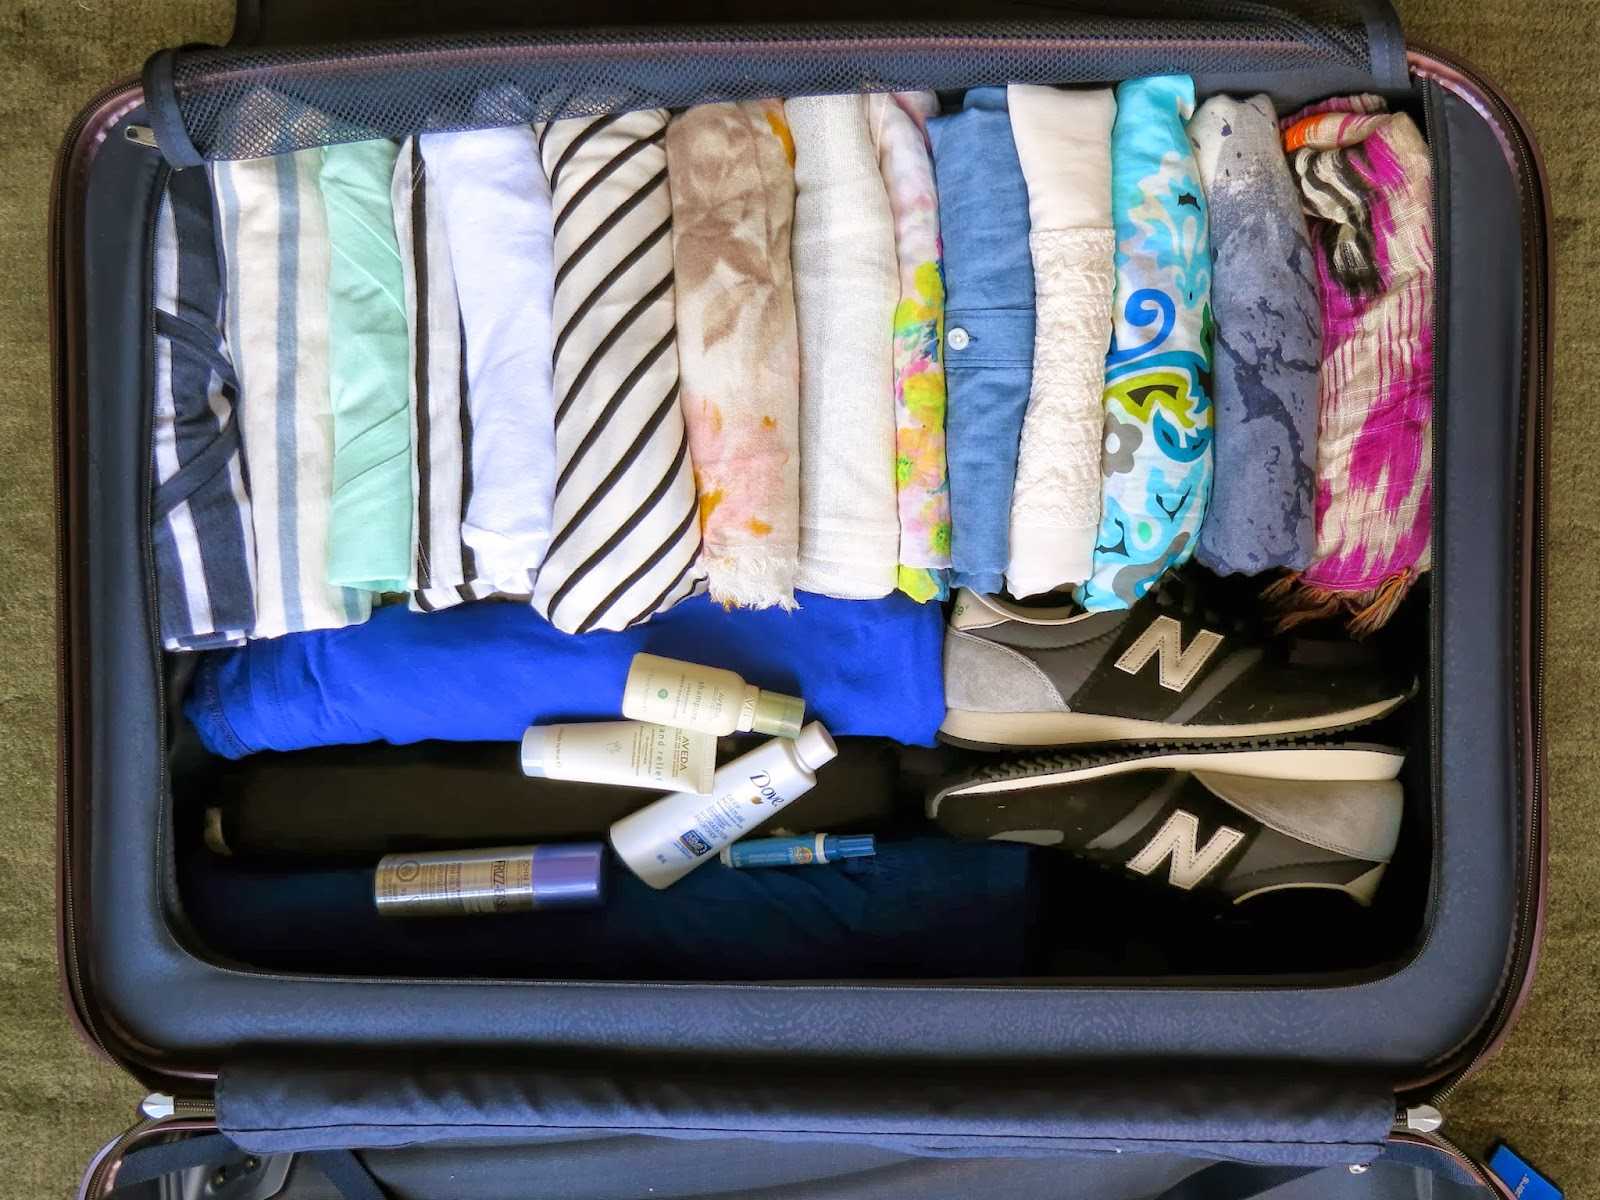 Как складывать вещи в шкафу: лучшие идеи для идеального порядка по методу конмари. как организовать хранение одежды в шкафу на полках?